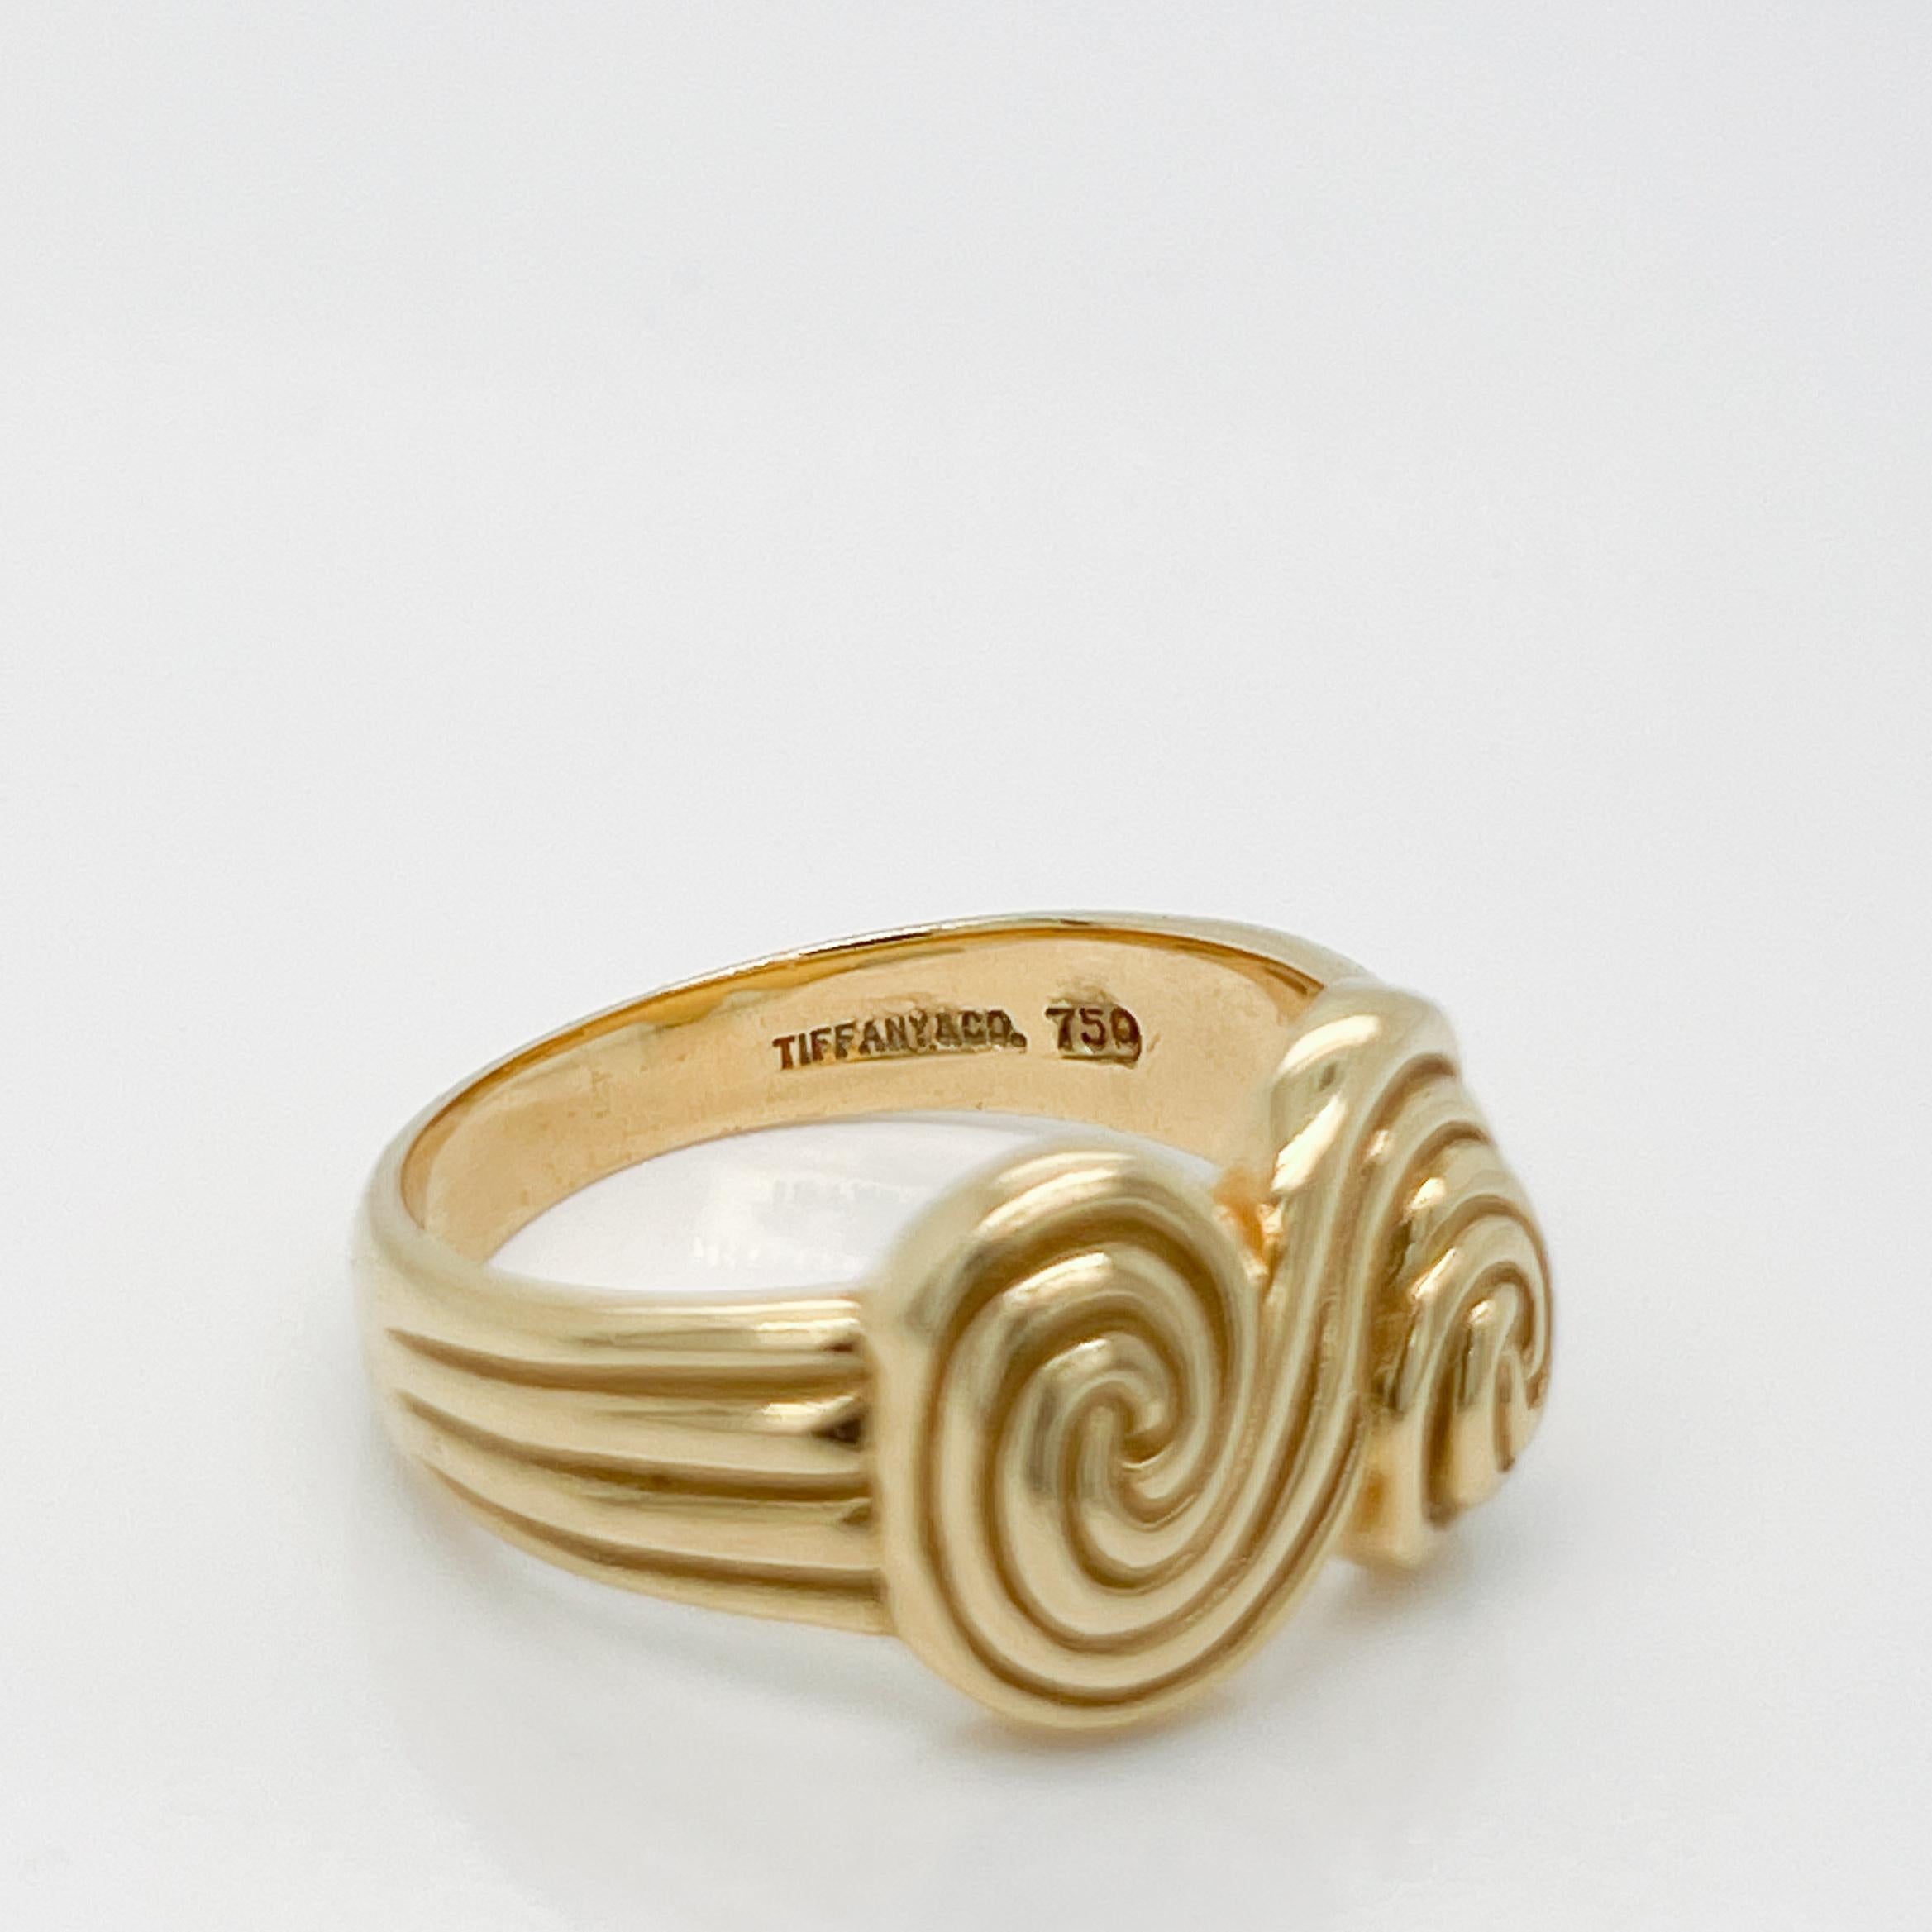 Vintage 1990s Tiffany & Co. 18 Karat Gold 'Spiro Swirl' Ring Size 6  1